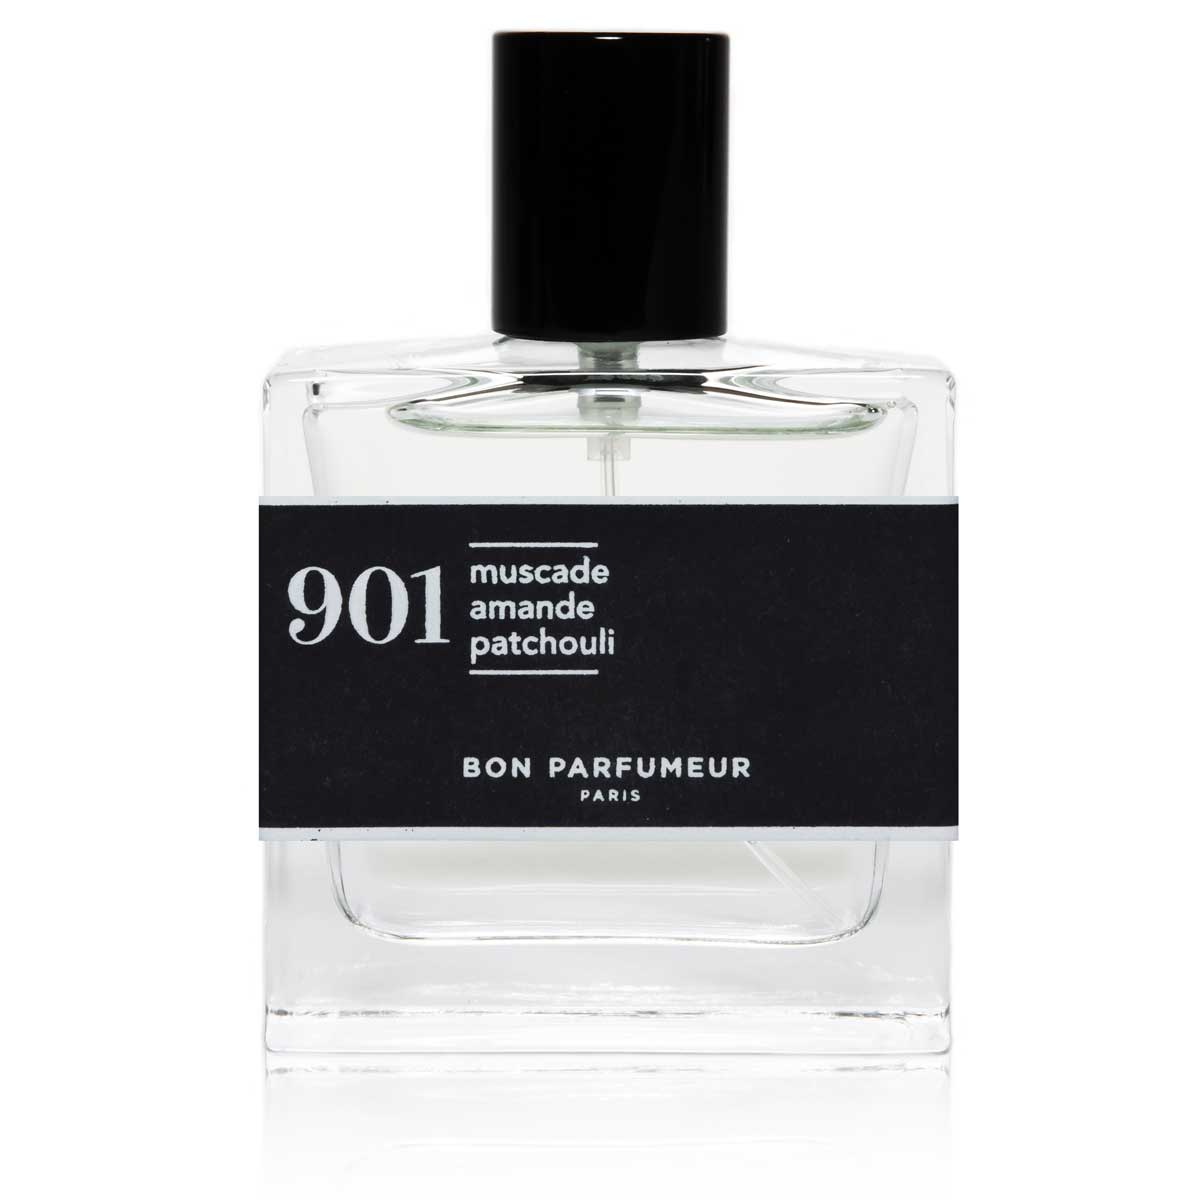 Bon Parfumeur 901 Nutmeg Almond Patchouli Eau De Parfum 30Ml